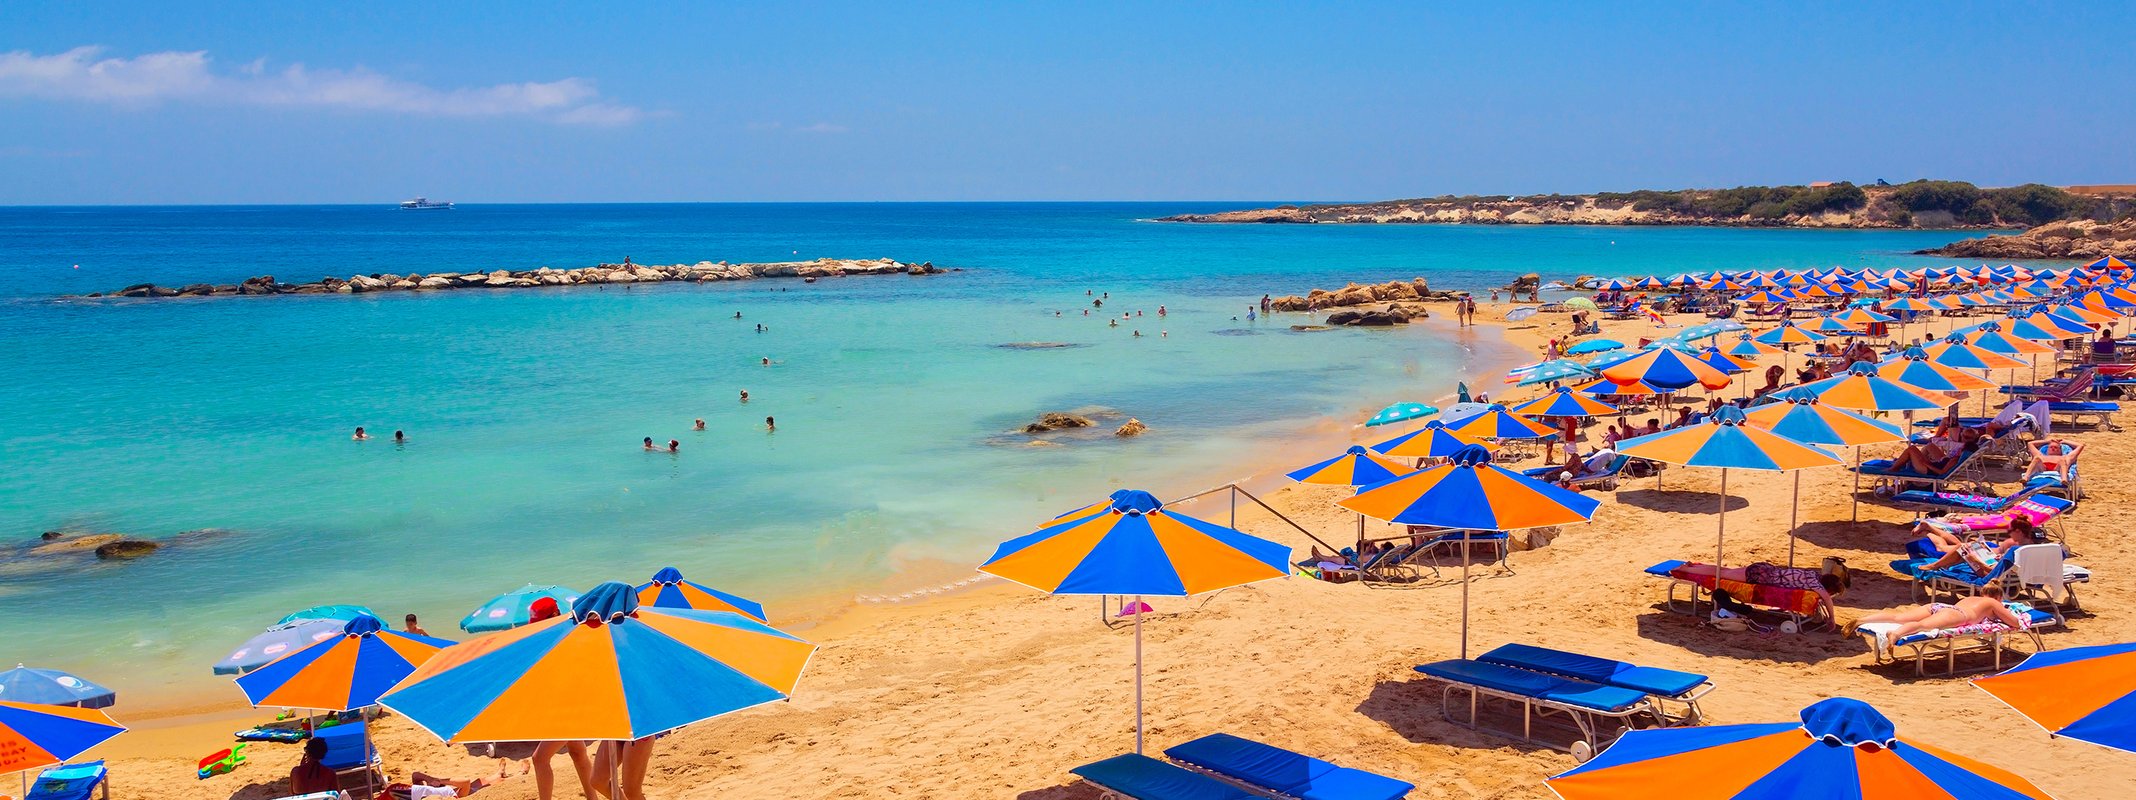 Οι παραλίες με Γαλάζια Σημαία στην Κύπρο